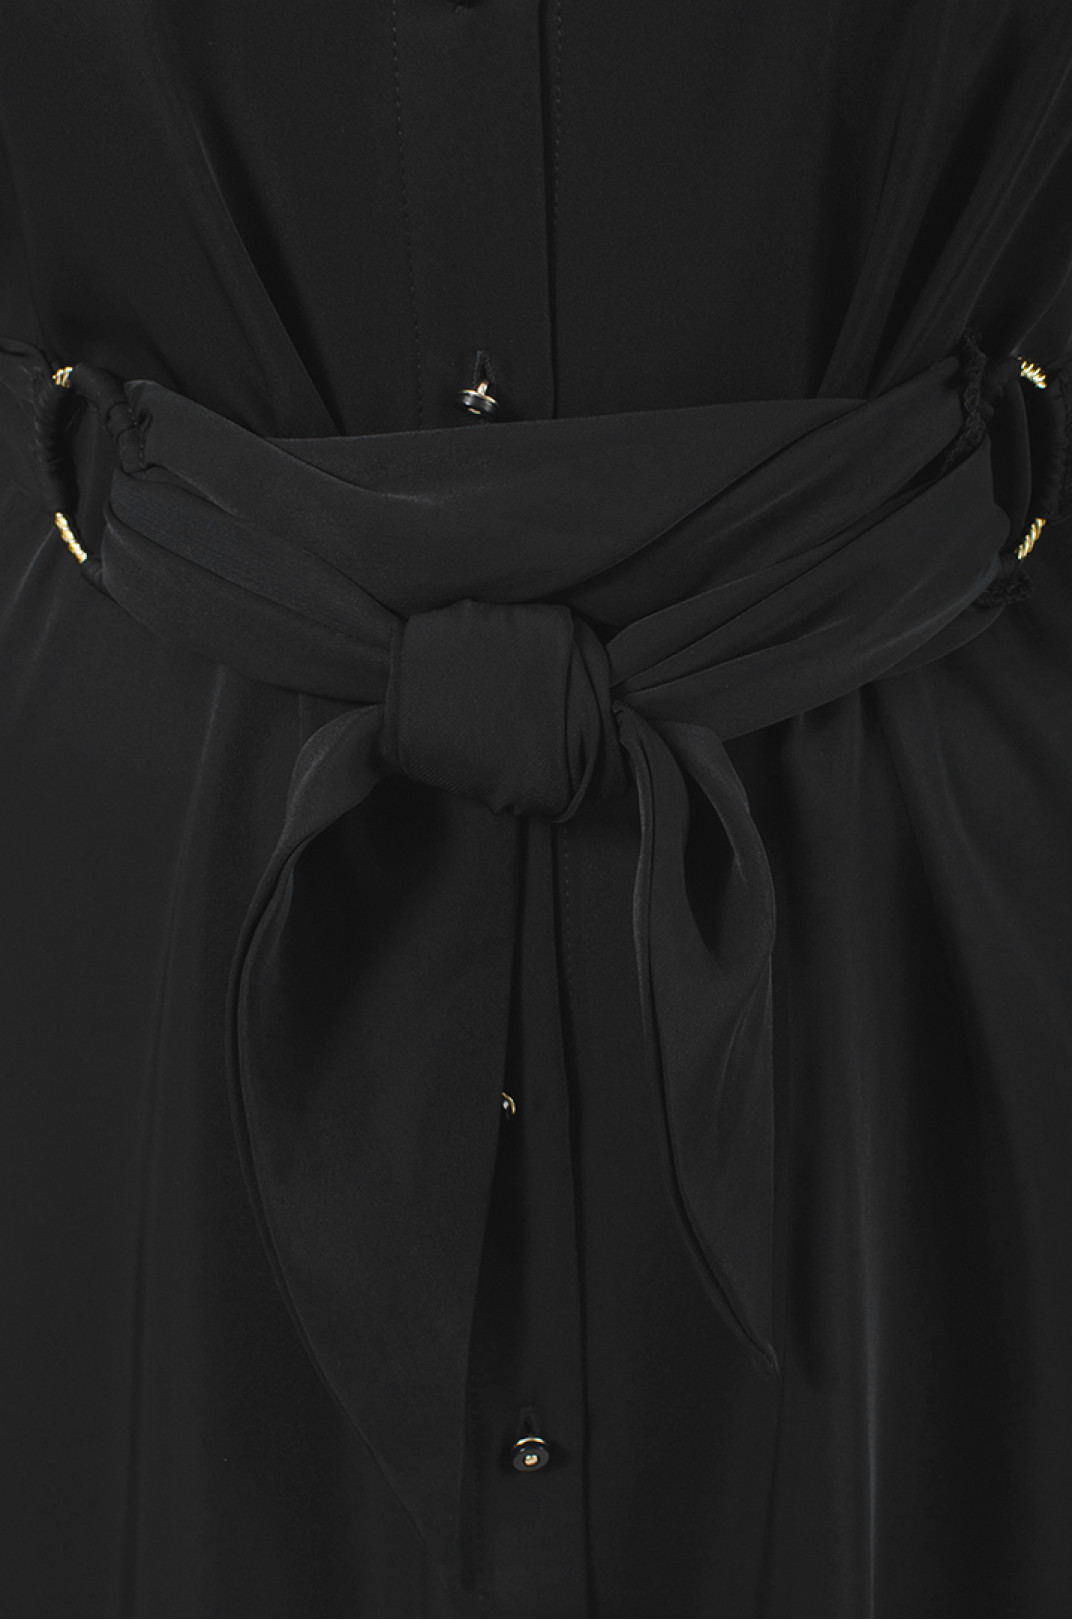 Черное шелковое платье с поясом декорированное кружевом батал